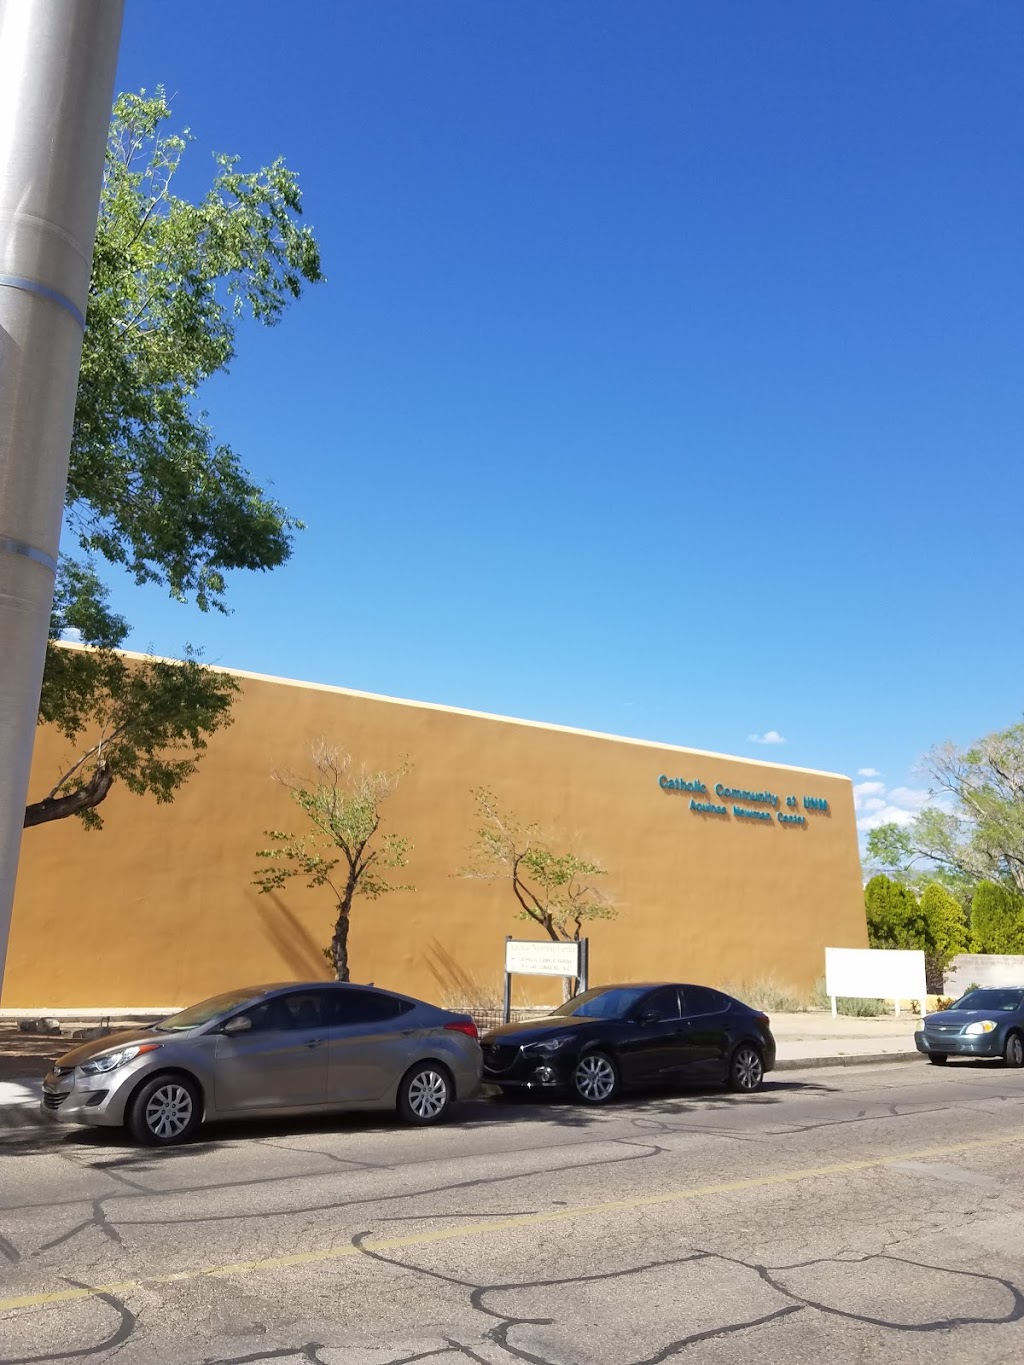 Thomas Aquinas Newman Center | 1815 Las Lomas Rd NE, Albuquerque, NM 87106, USA | Phone: (505) 247-1094